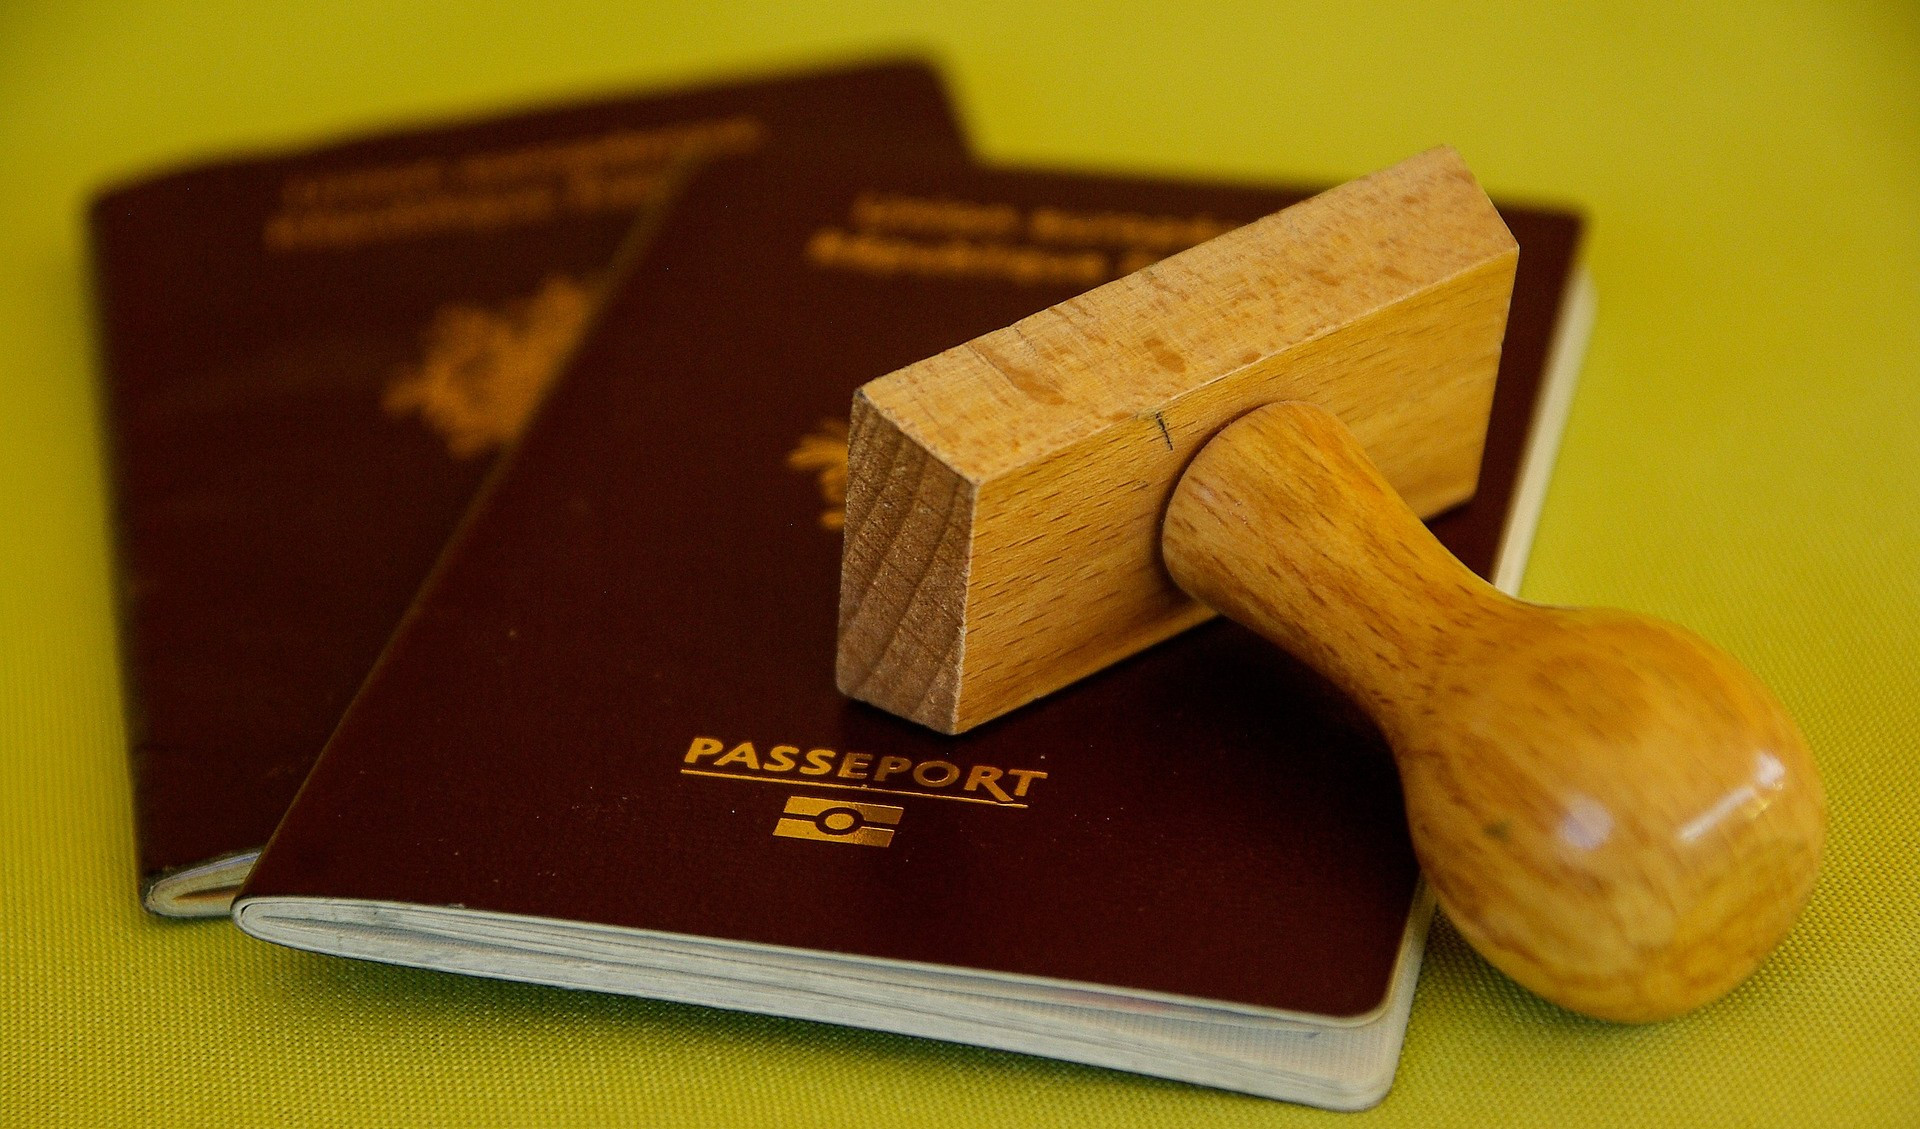 Rinnovo passaporti, problemi con prenotazione online: apertura straordinaria dell'ufficio agli over 60